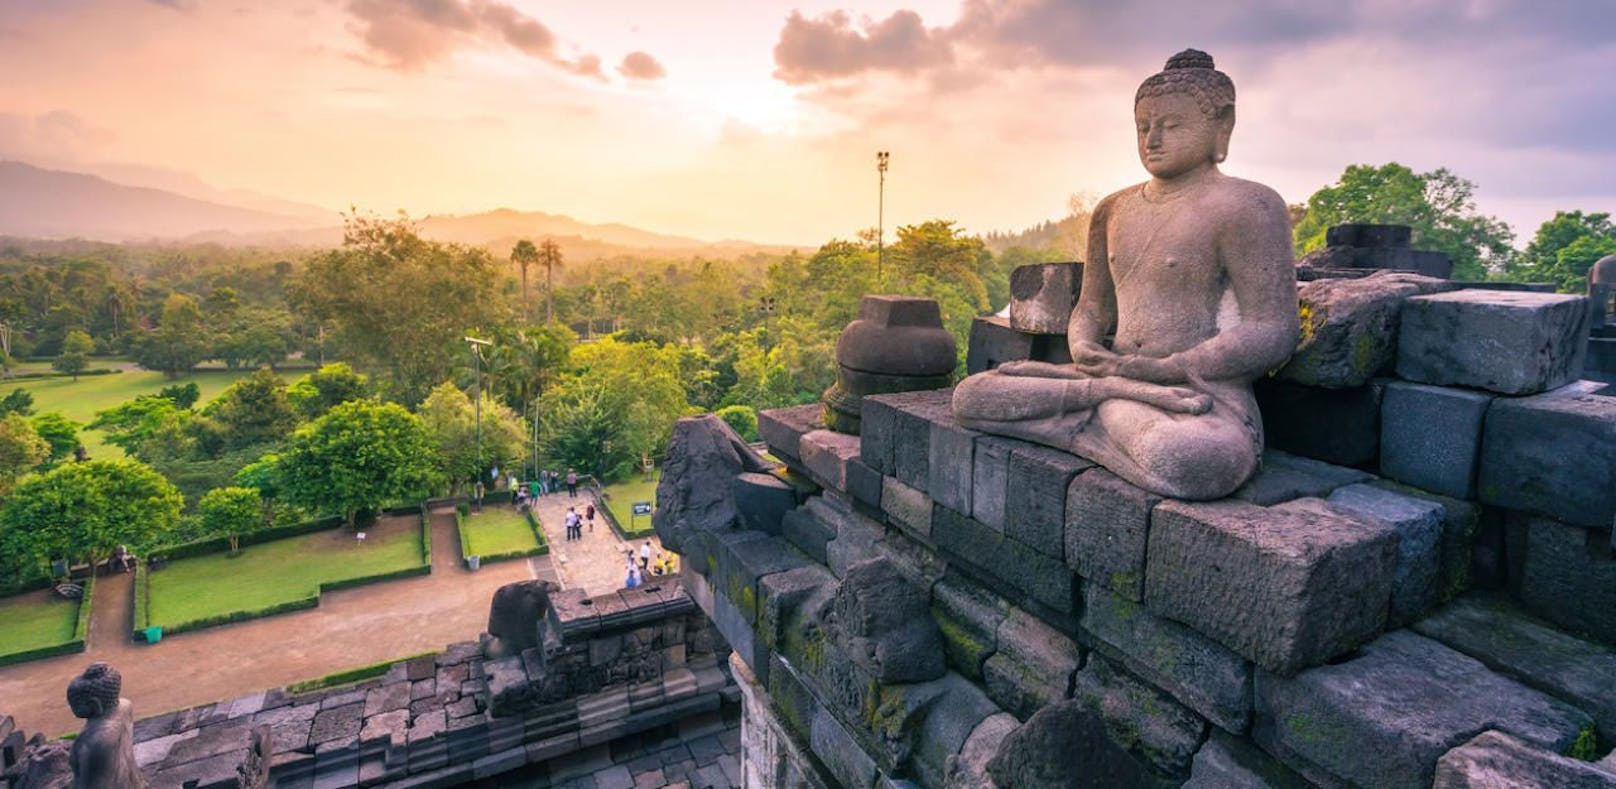 Indonesien ist das größte muslimische Land der Welt, beheimatet mit dem Borobudur aber auch eine der größten buddhistischen Tempelanlagen der Erde.